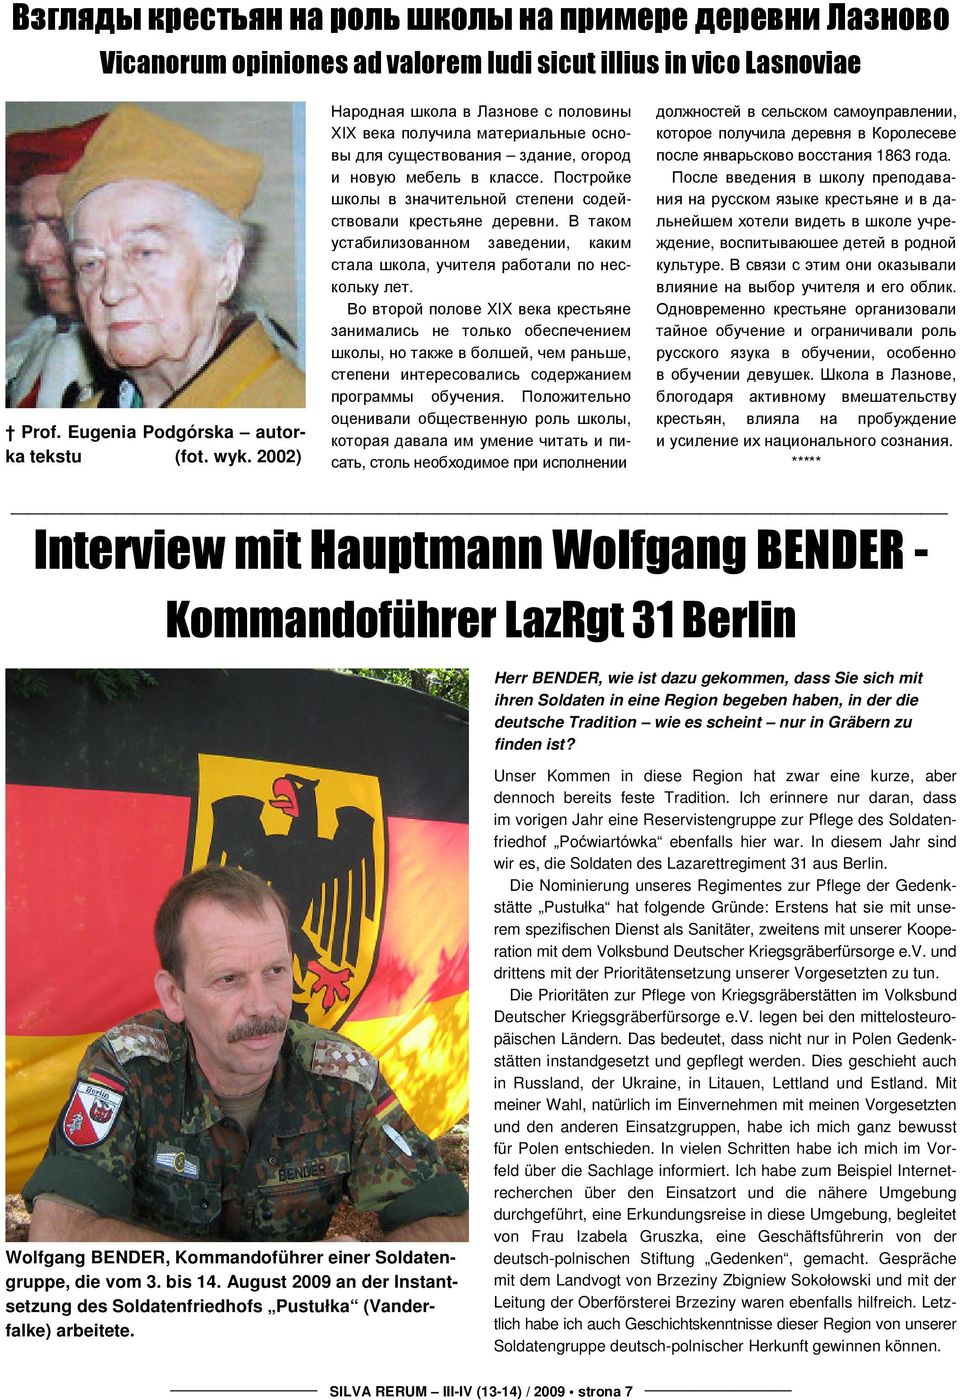 Herr BENDER, wie ist dazu gekommen, dass Sie sich mit ihren Soldaten in eine Region begeben haben, in der die deutsche Tradition wie es scheint nur in Gräbern zu finden ist?